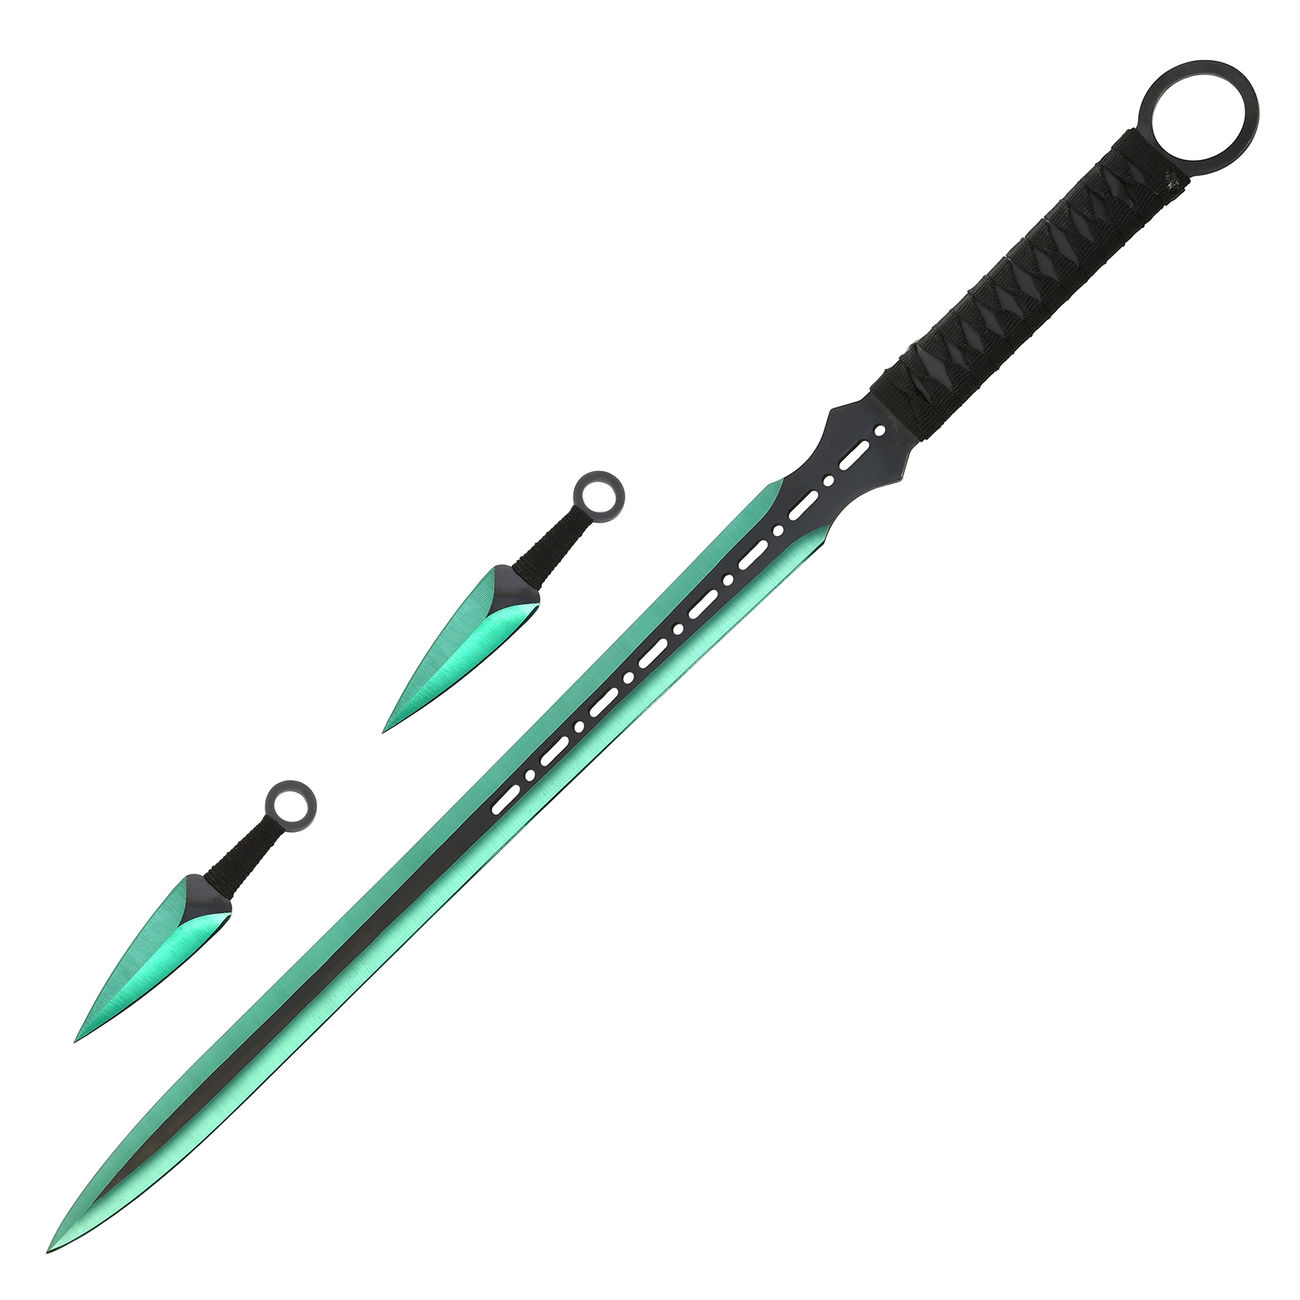 Heros Edge Ninja Schwert Set inkl. 2 Wurfmesser schwarz / grün